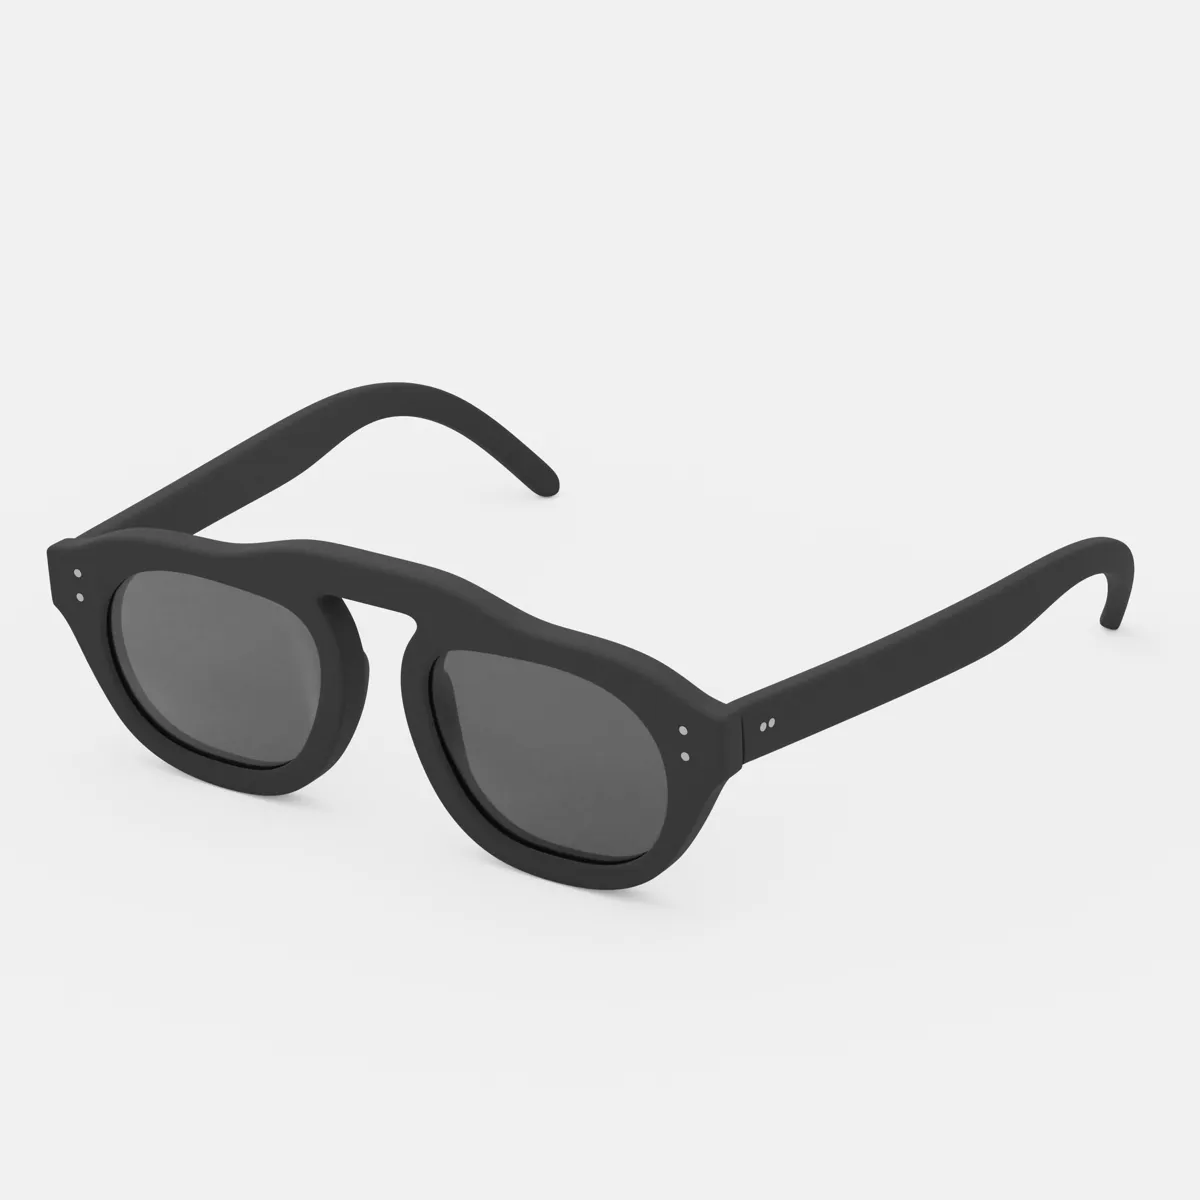 Plymouth Oval Eyewear Frames